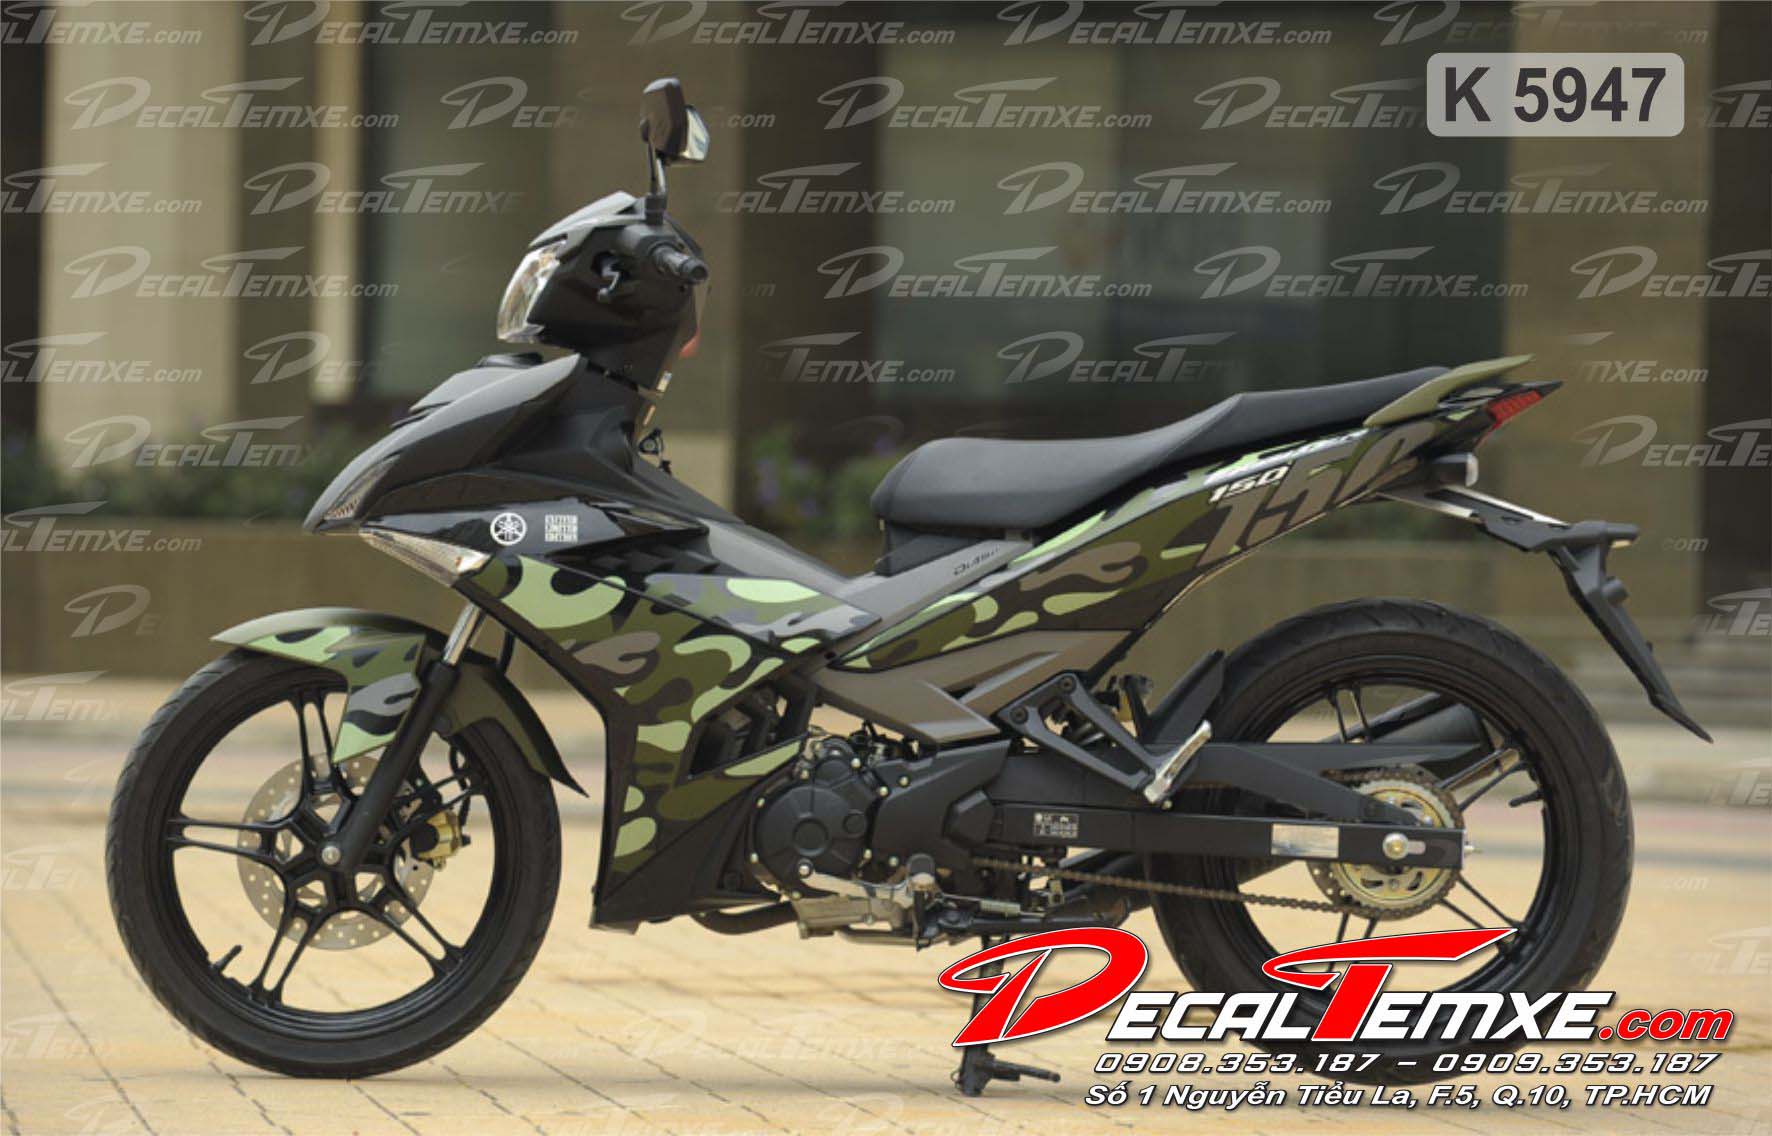 Cận cảnh Yamaha Exciter 150 Camo phong cách quân đội